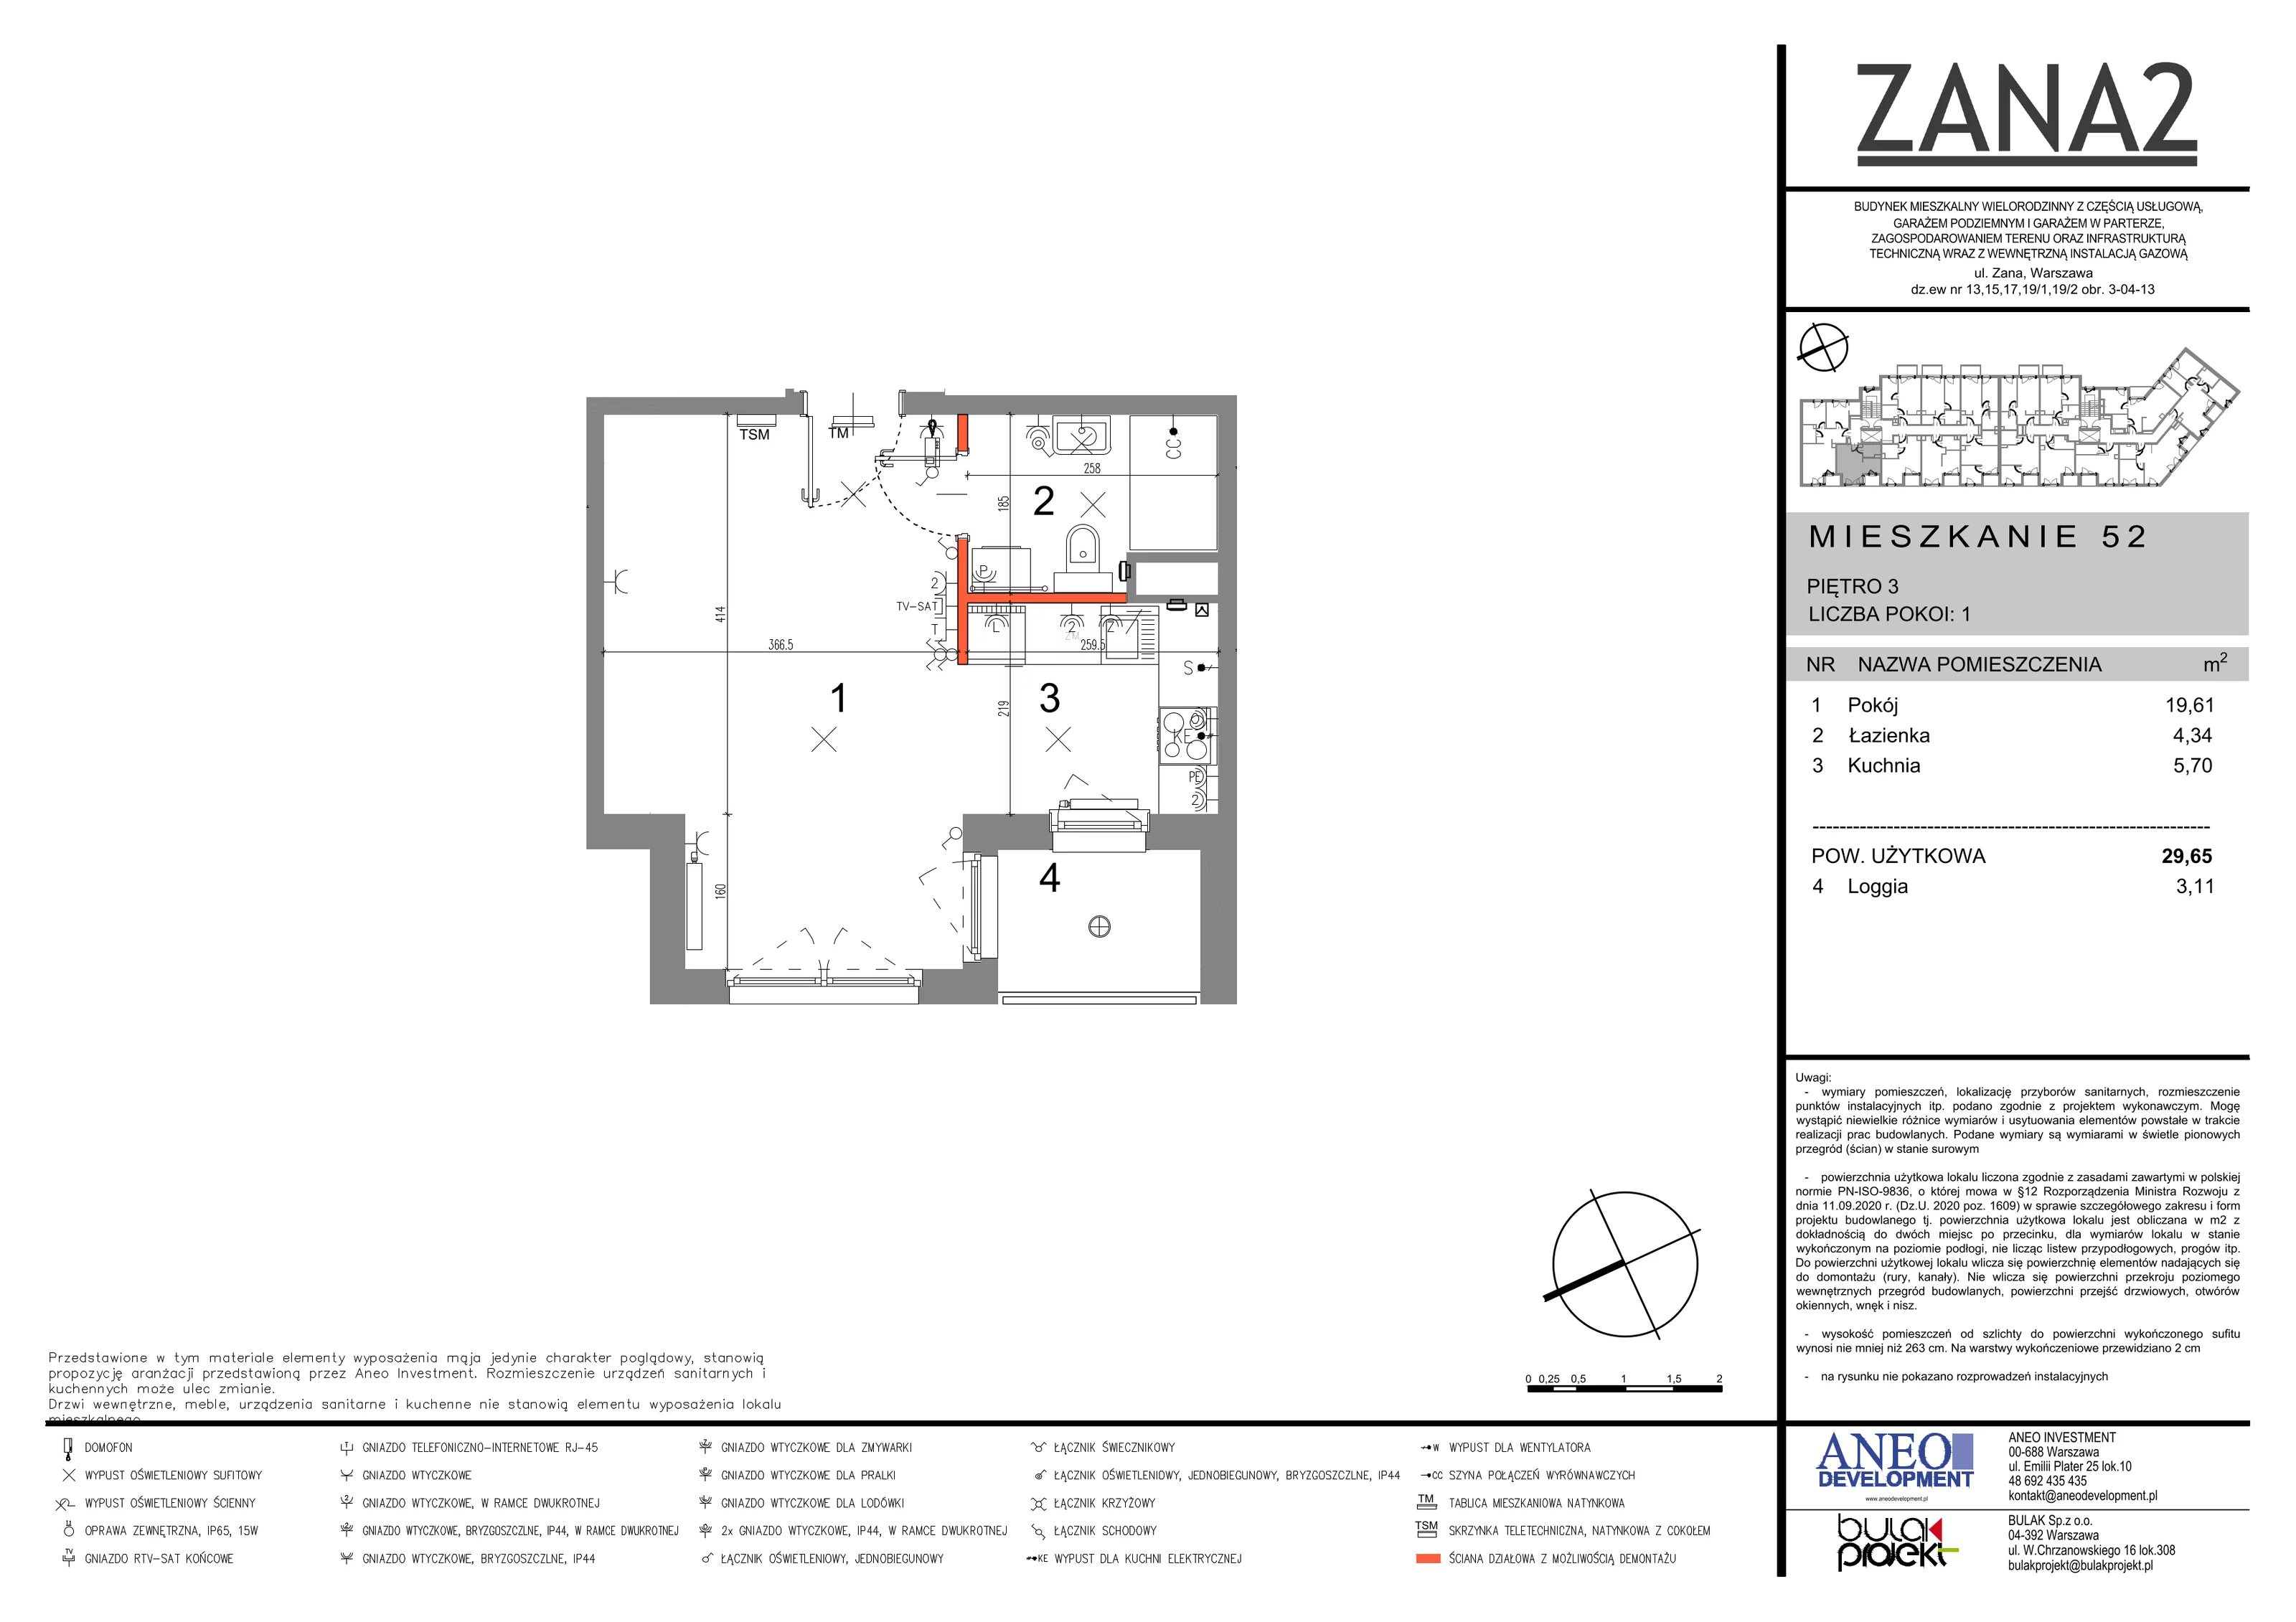 Mieszkanie 35,38 m², piętro 3, oferta nr 52, Zana 2, Warszawa, Praga Południe, Gocławek, ul. Tomasza Zana